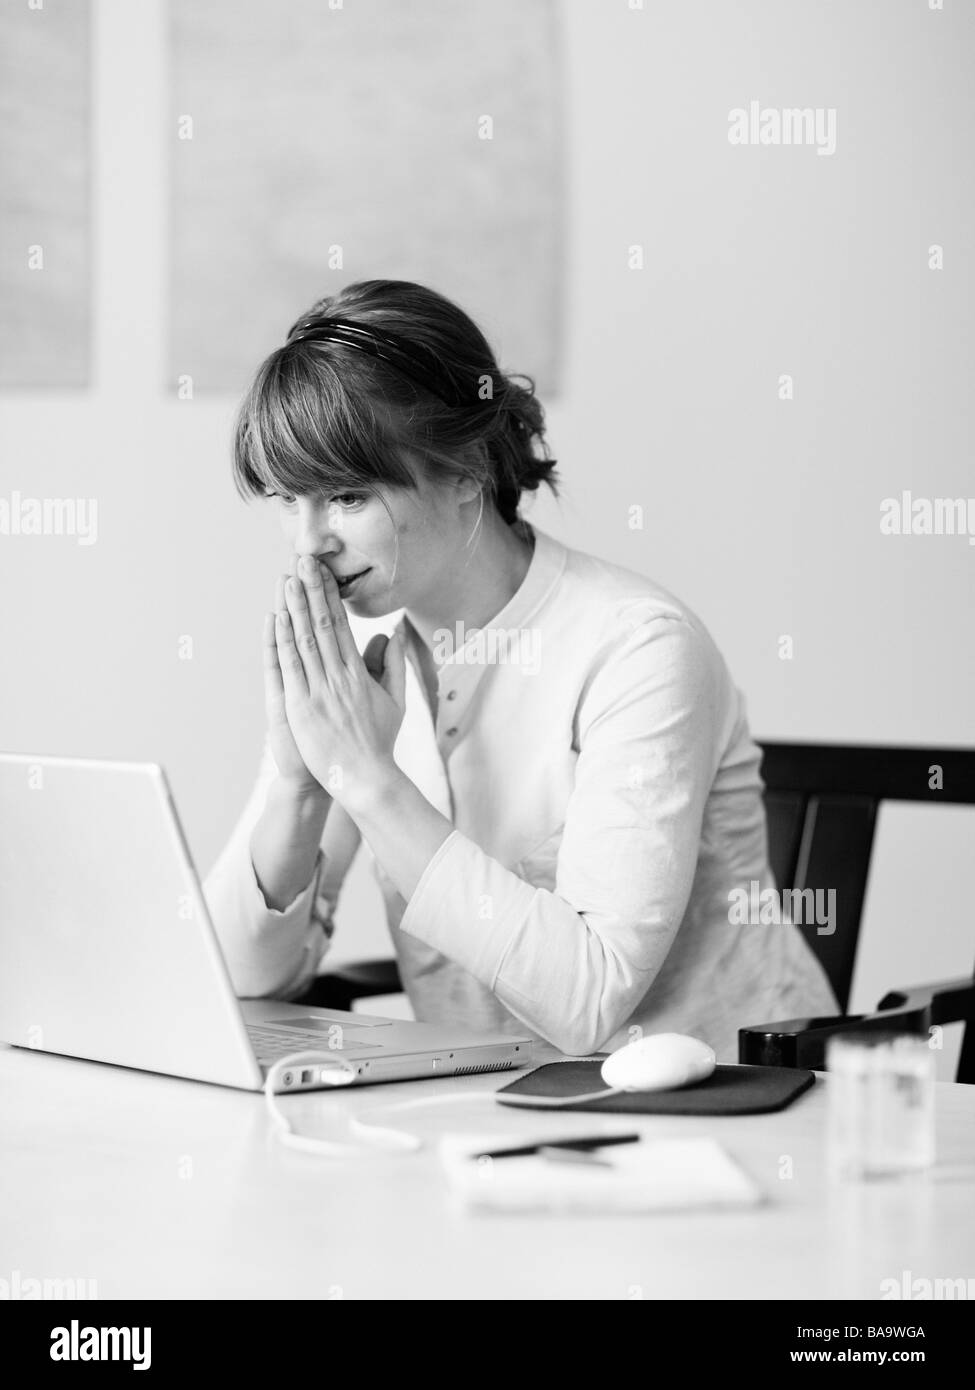 Une femme utilisant un ordinateur portable, la Suède. Banque D'Images